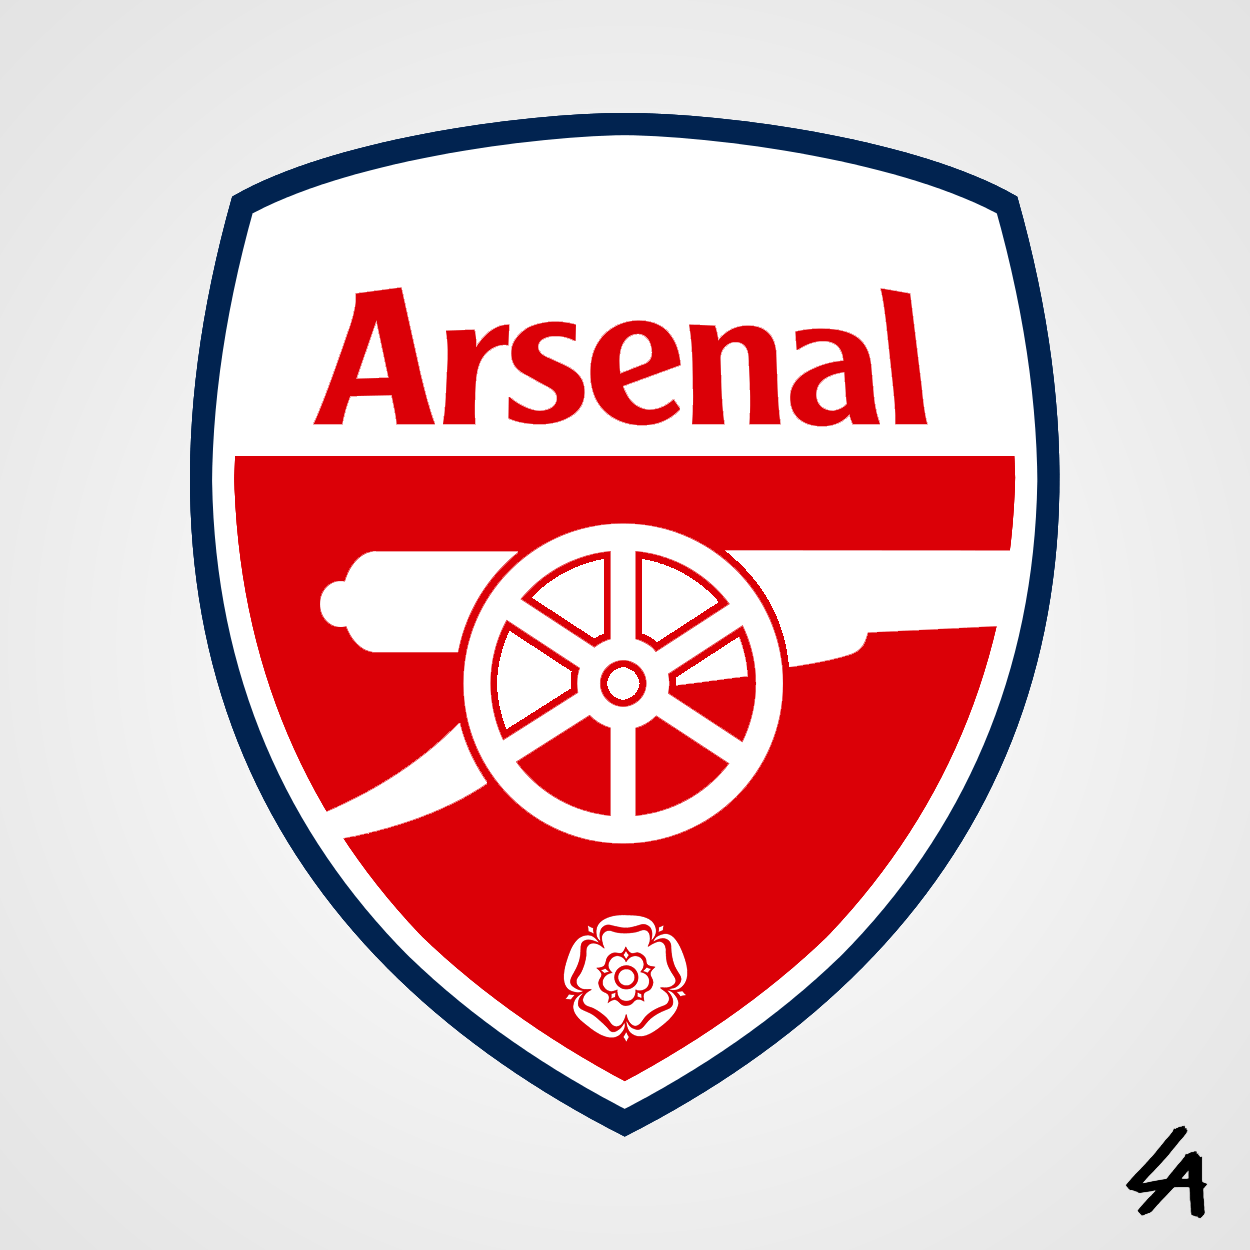 Arsenal Logo - Arsenal logo